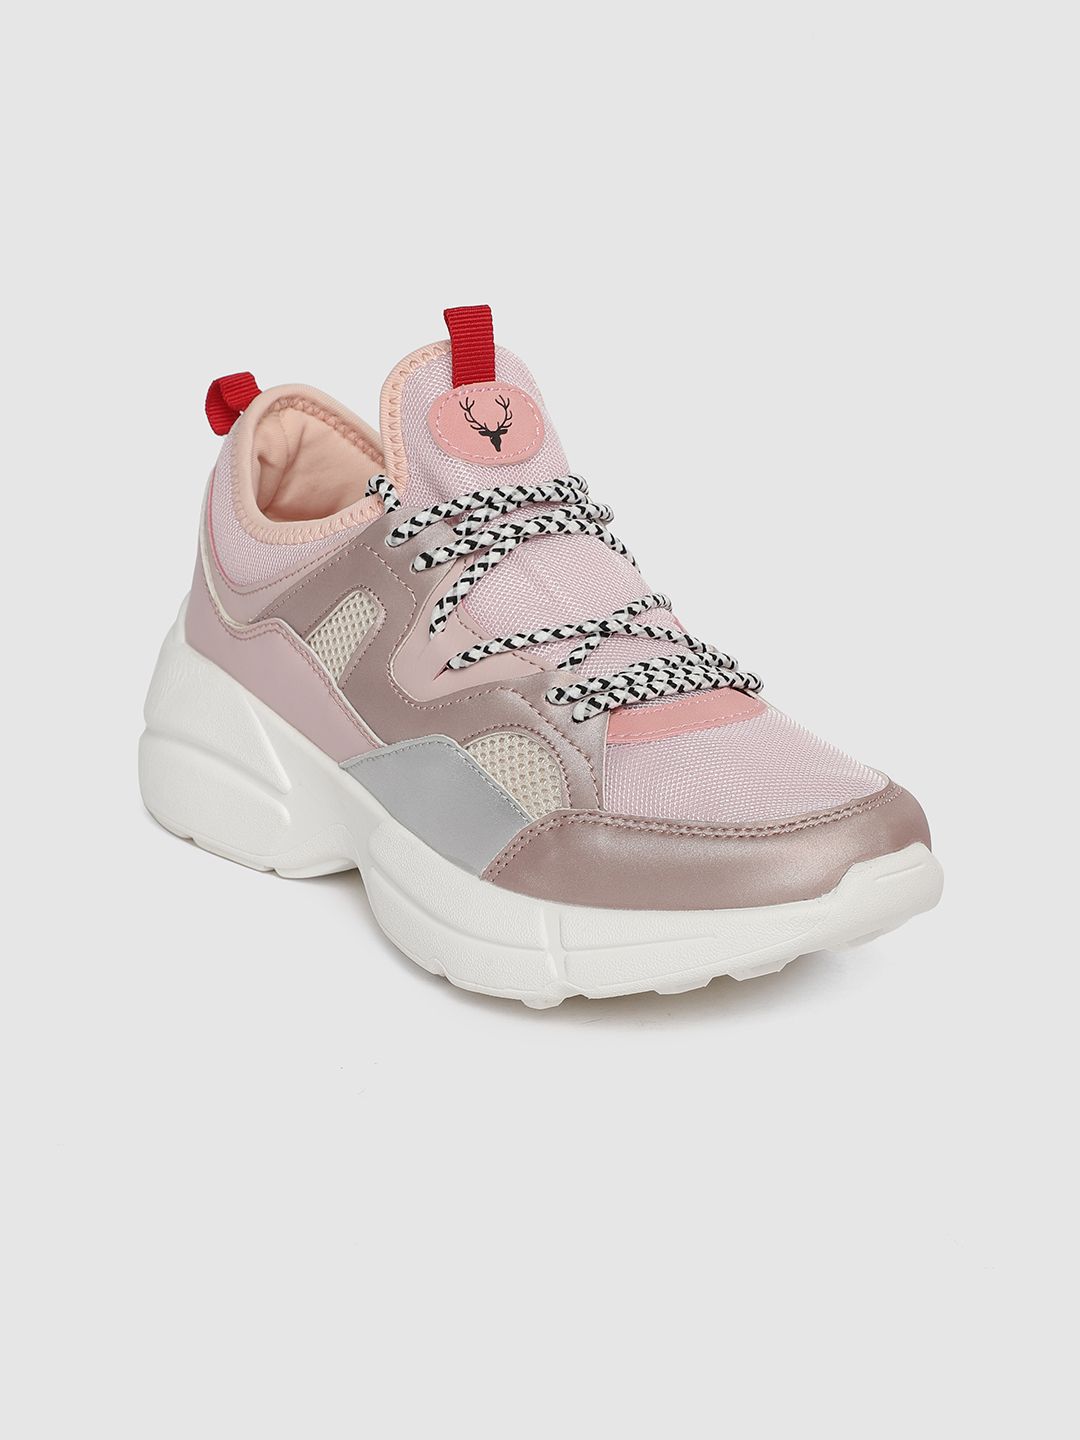 Allen Solly Women Dusty Pink Colourblocked Sneakers